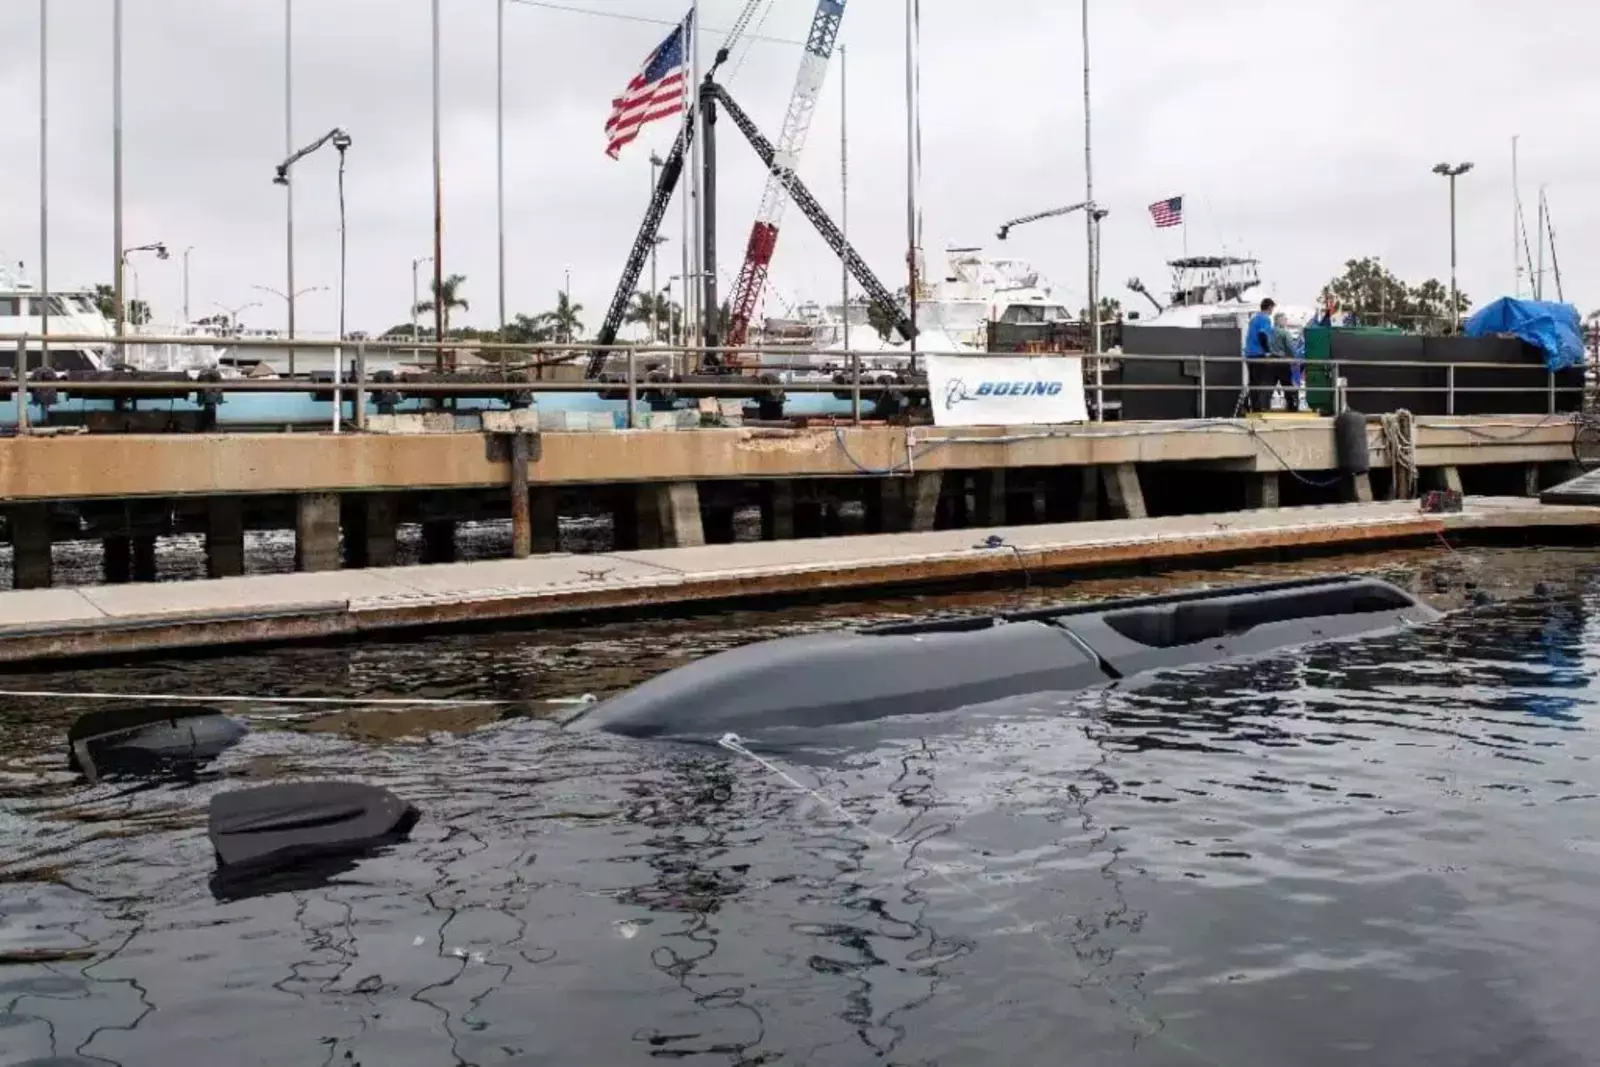 Orca XLUUV готовится к первому тесту в воде после церемонии крещения 28 апреля 2022 года в Хантингтон-Бич, штат Калифорния.